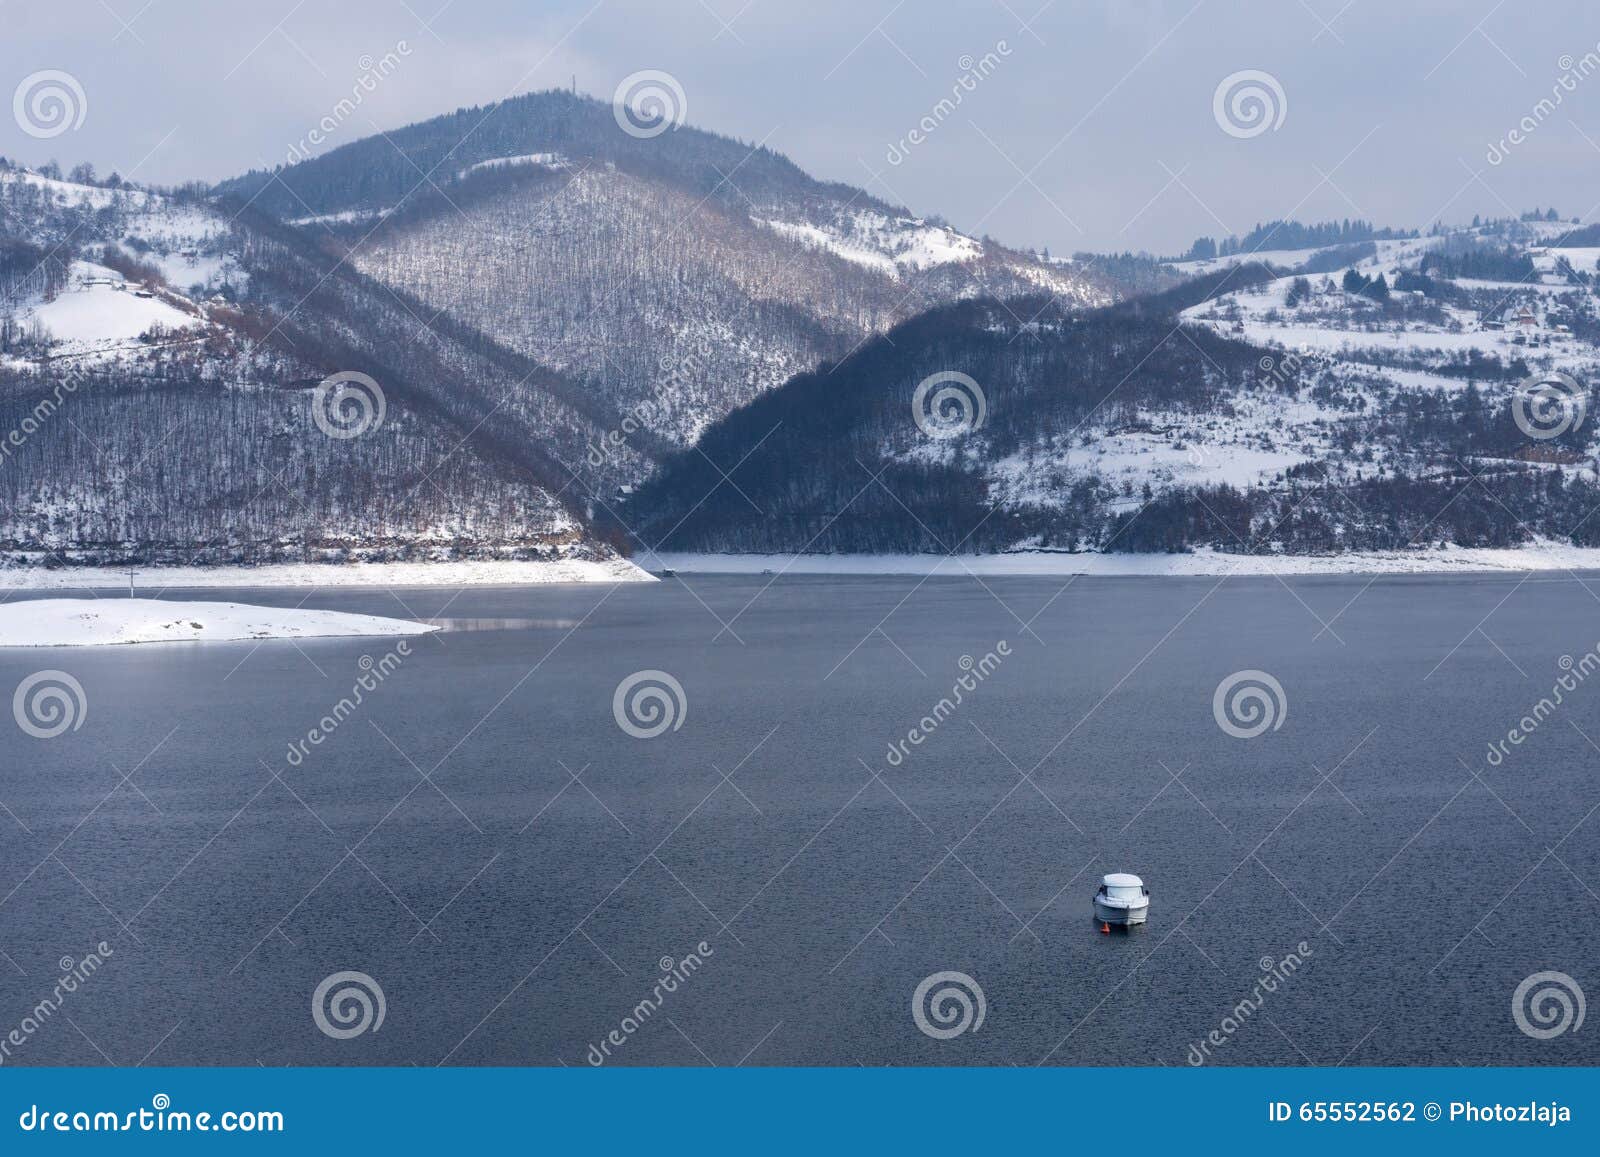 lake zlatar at zlatibor serbia